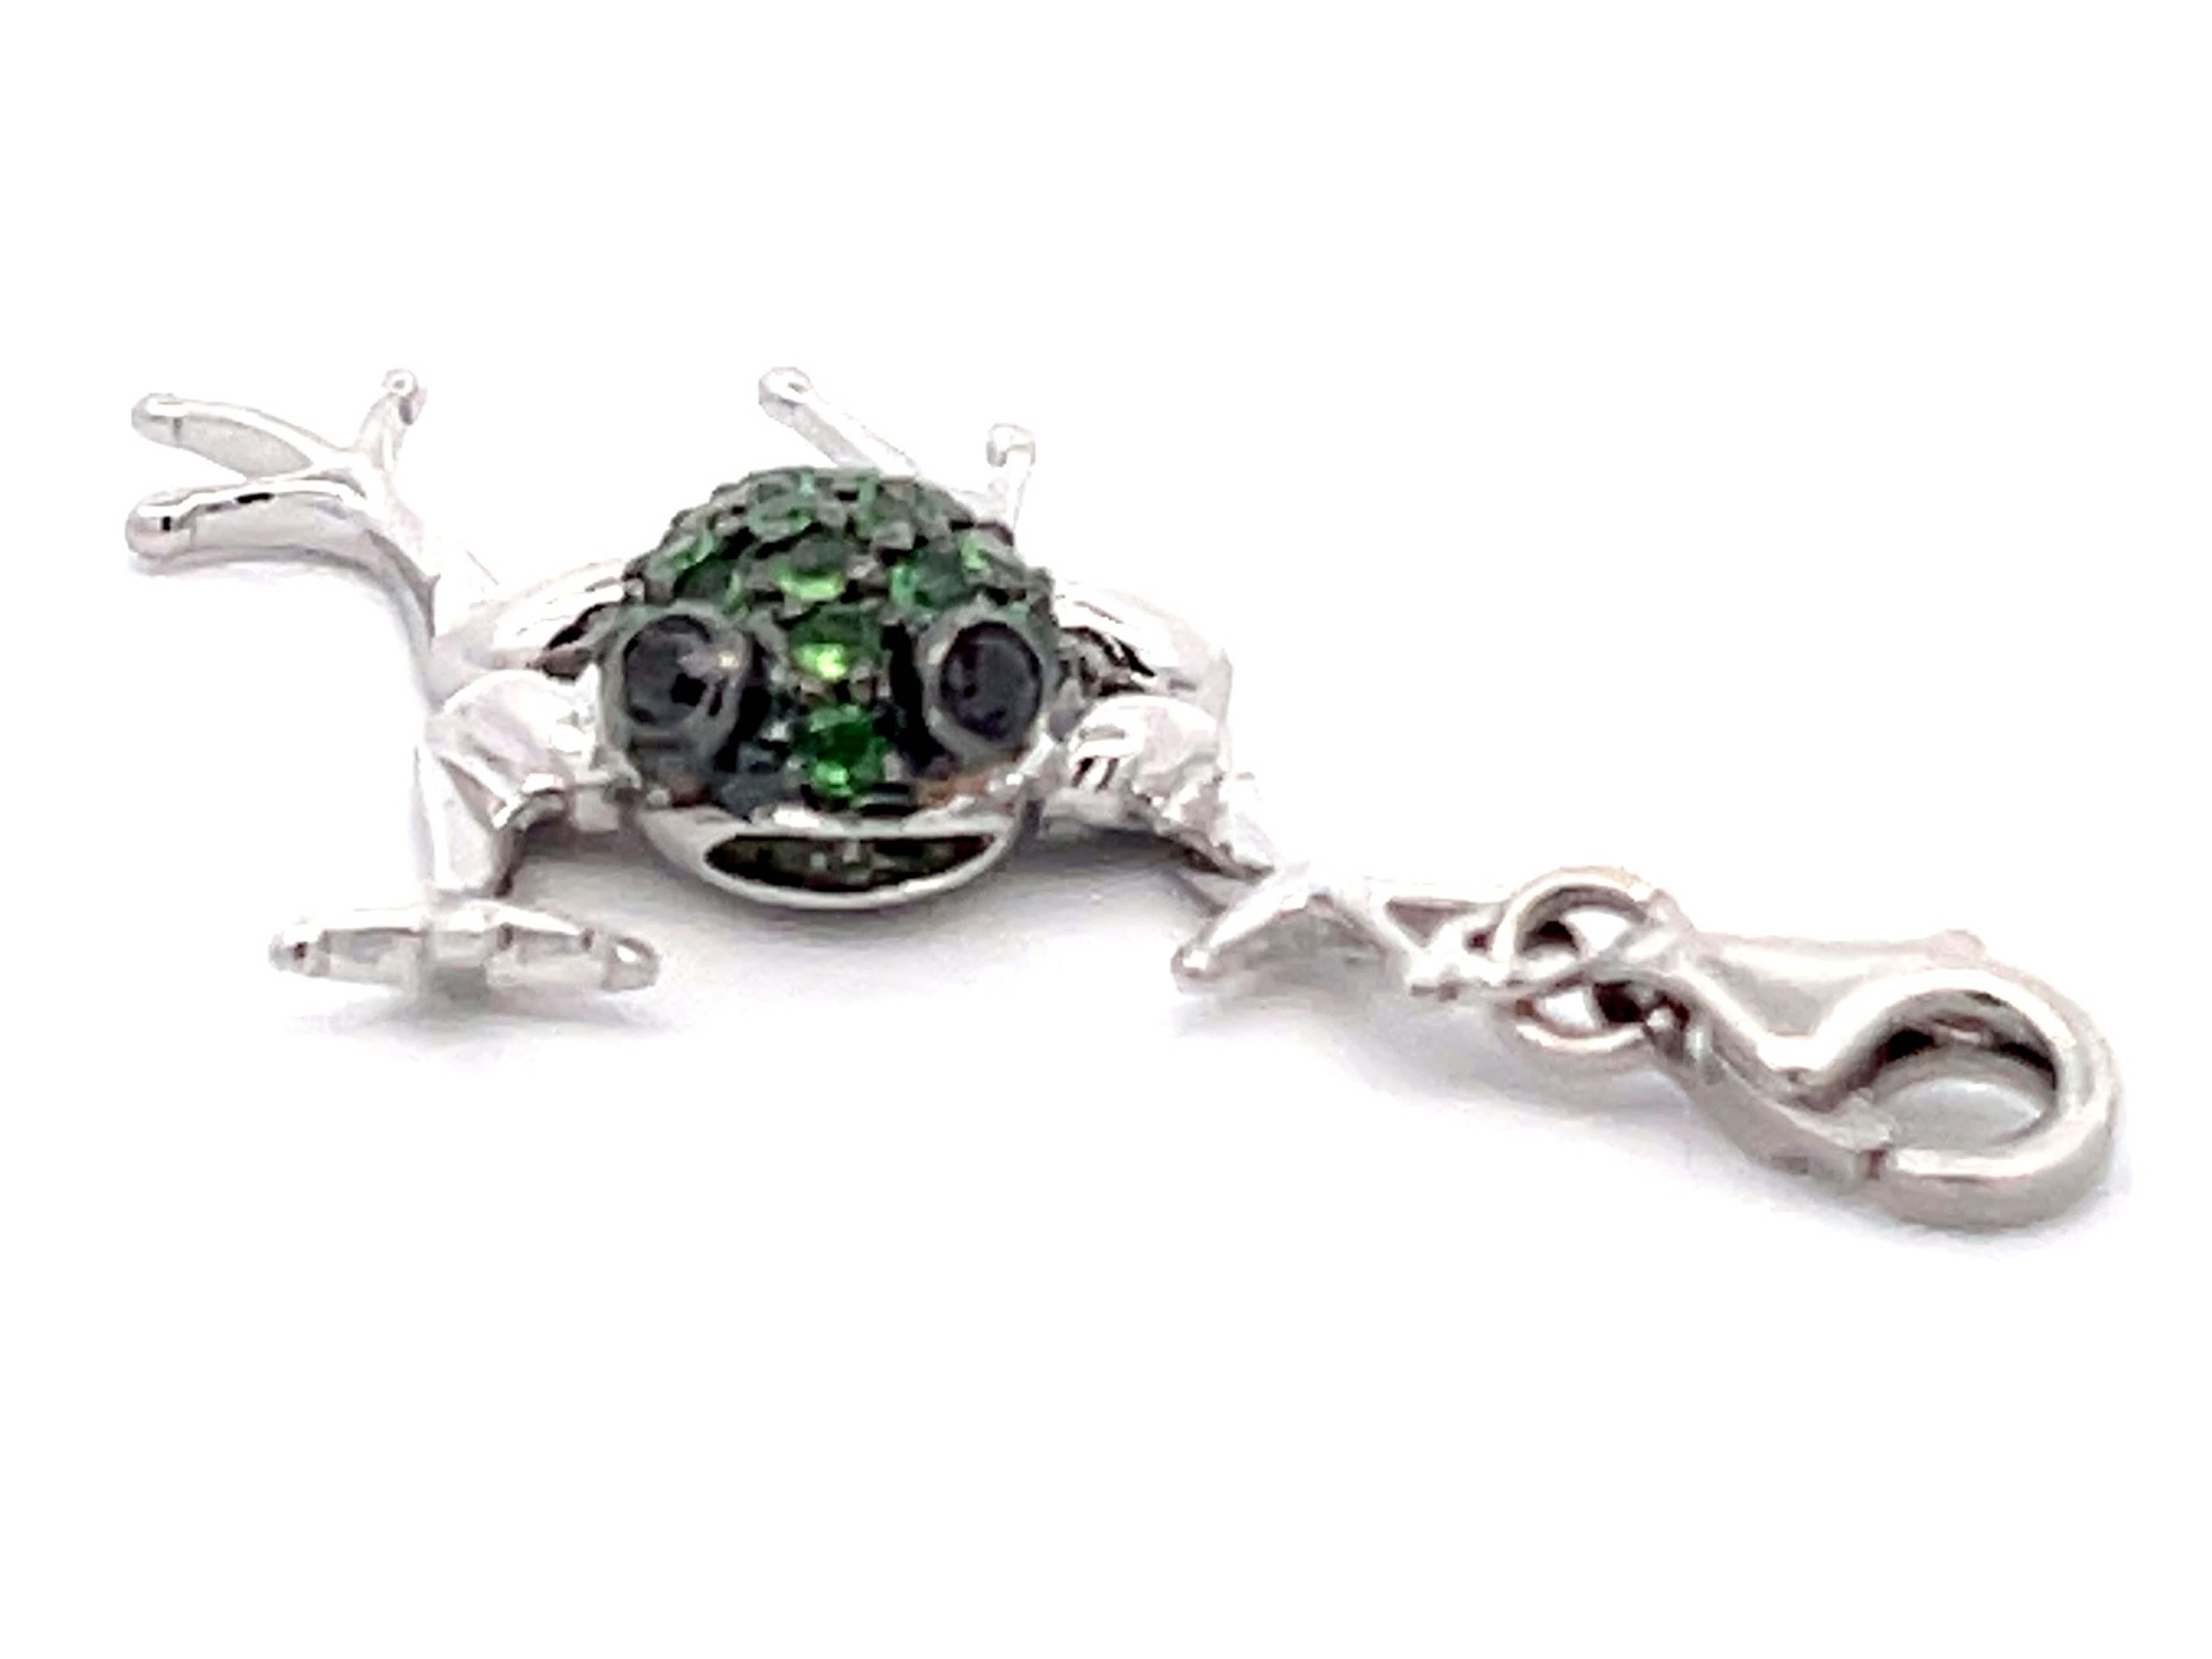 Brilliant Cut Green Tsavorite & Black Diamond Frog Pendant Charm in 14K White Gold For Sale